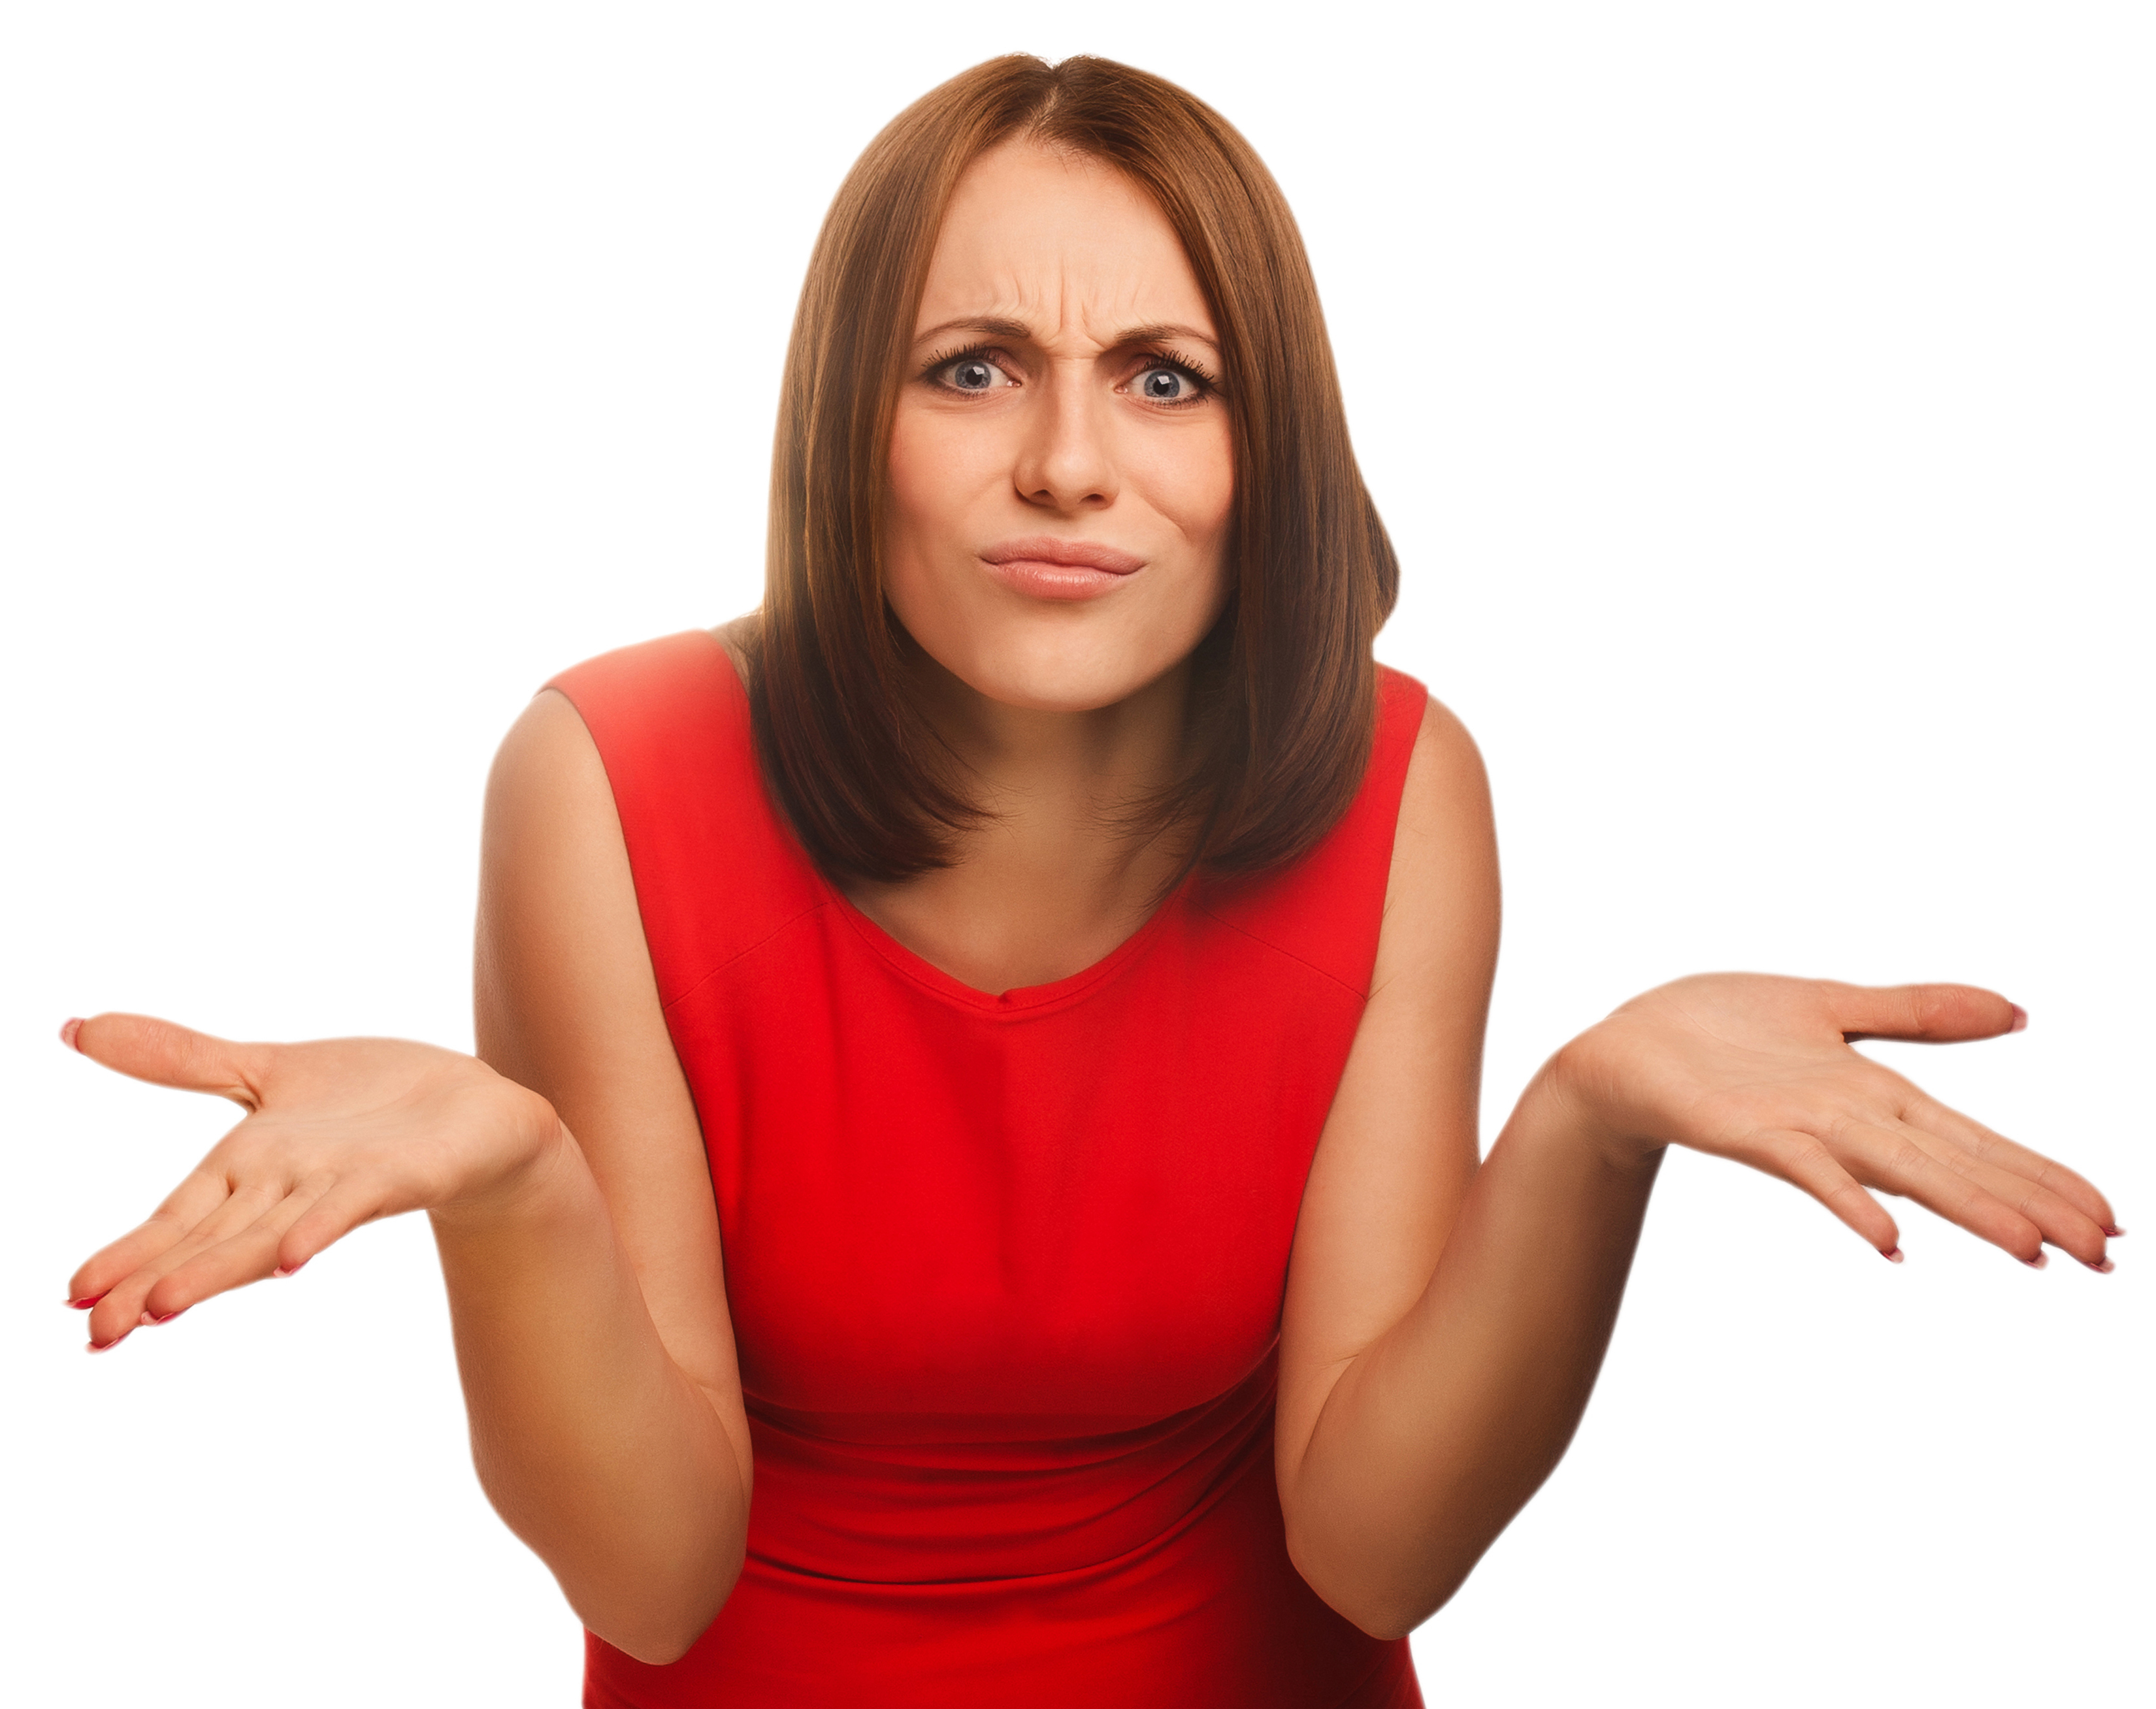 Femme faisant le geste d'être contrariée | Source : Shutterstock